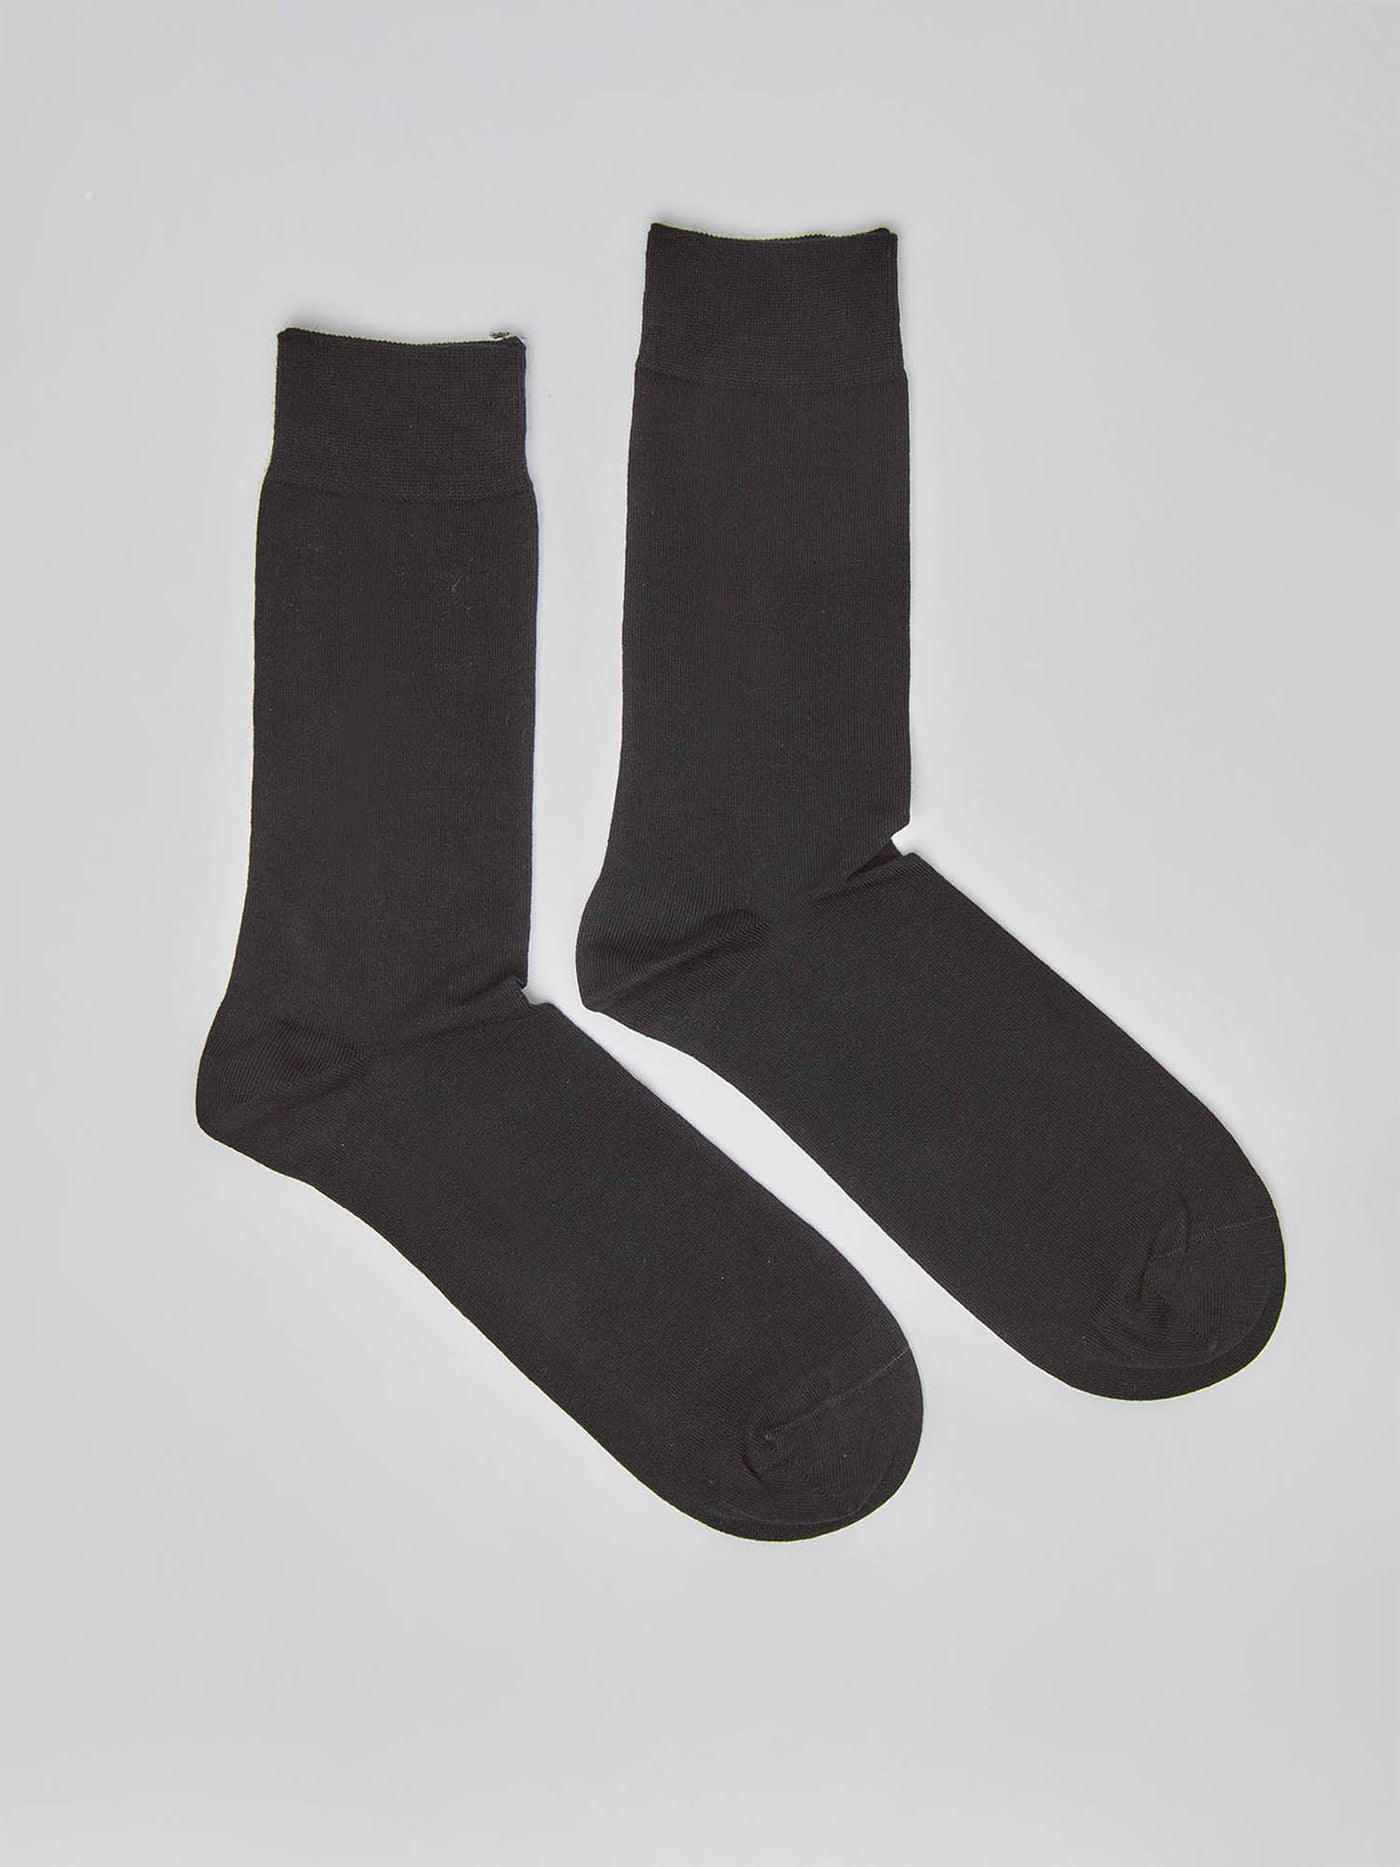 2 Pairs of Socks - Long